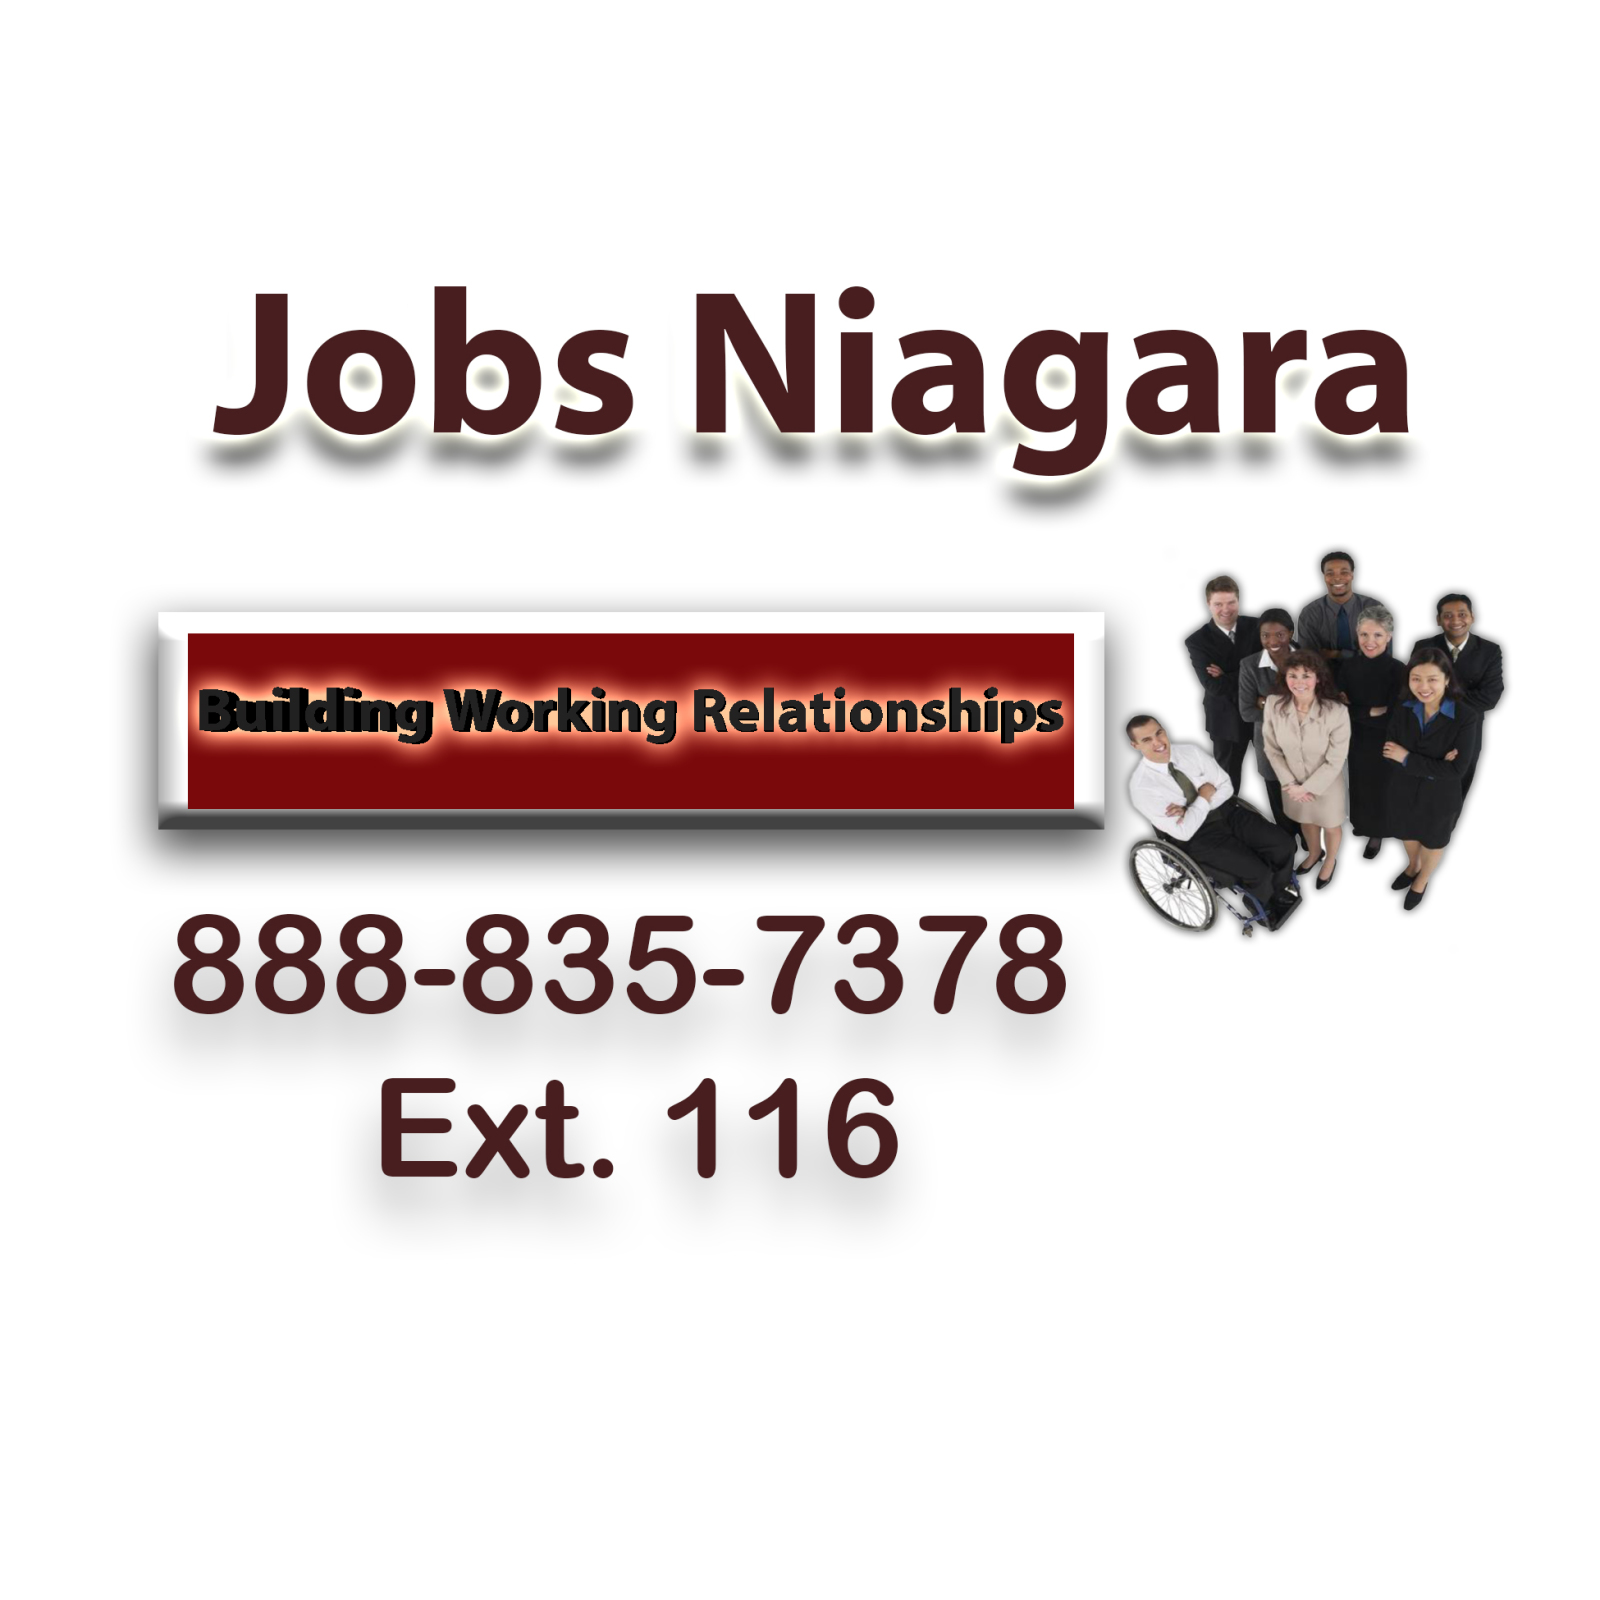 Jobs Niagara